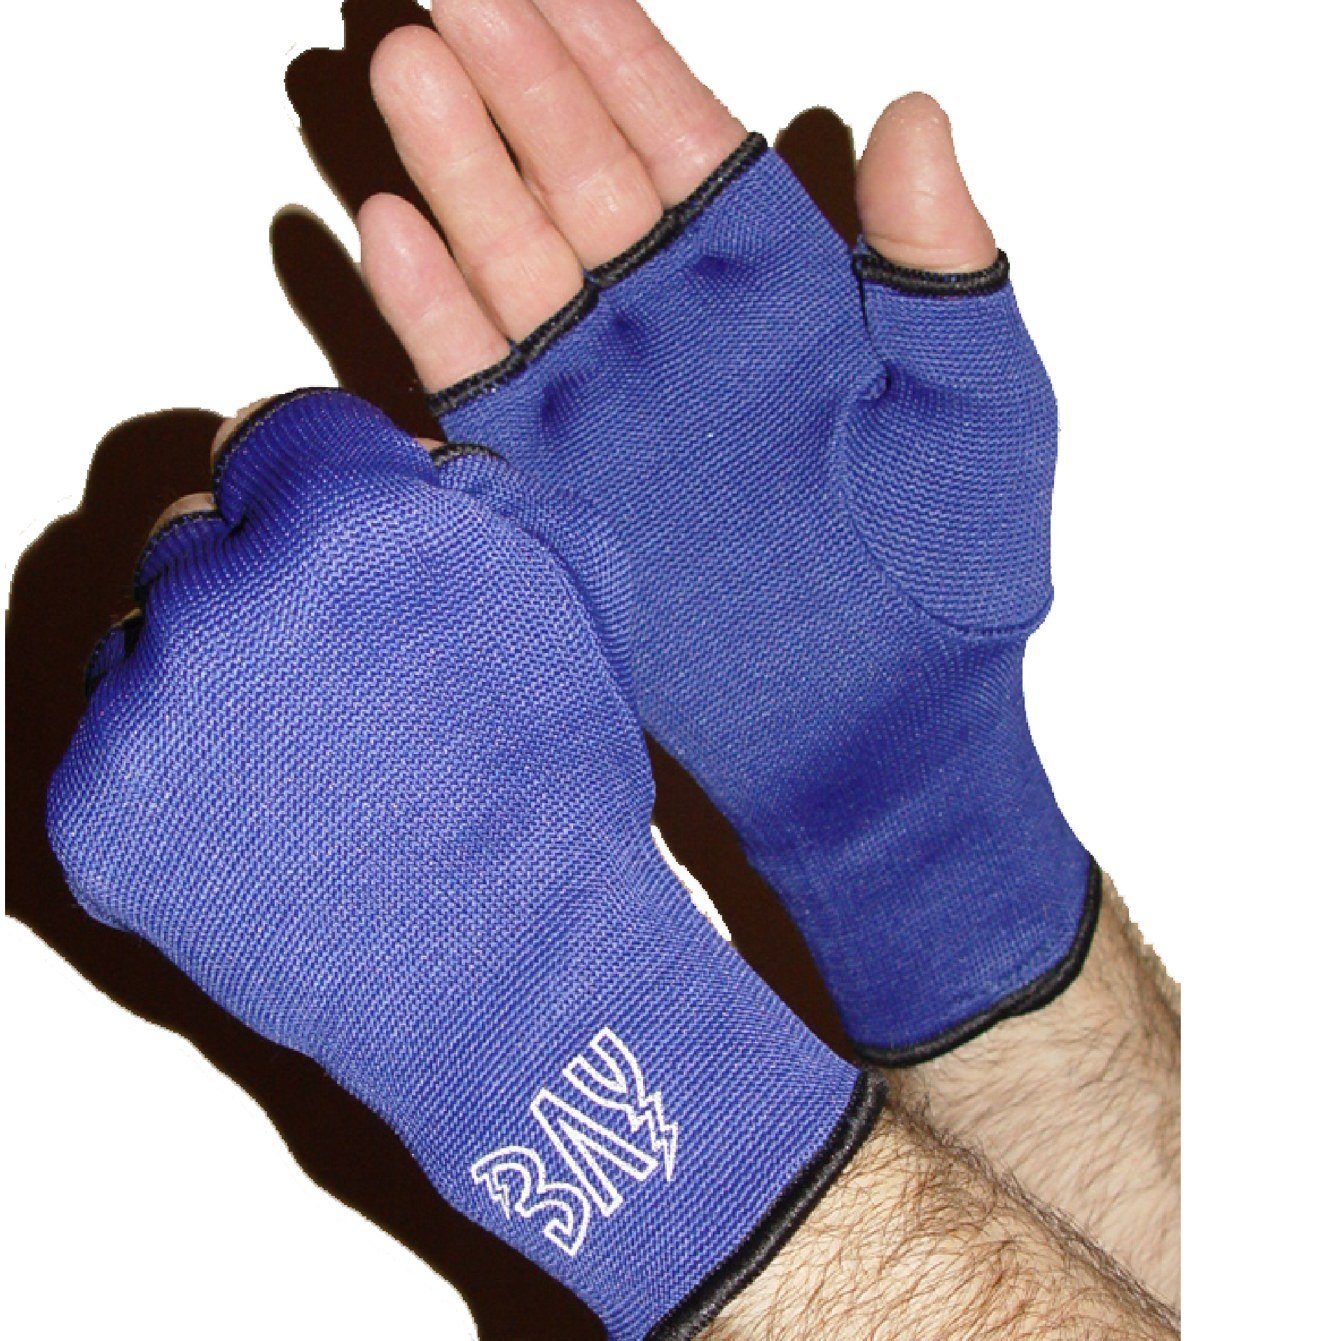 BAY-Sports Boxhandschuhe Mini Deko Box-Handschuhe Boxen Geschenk Auto Paar  camo blau, Anhänger für Tasche, Autospiegel usw.